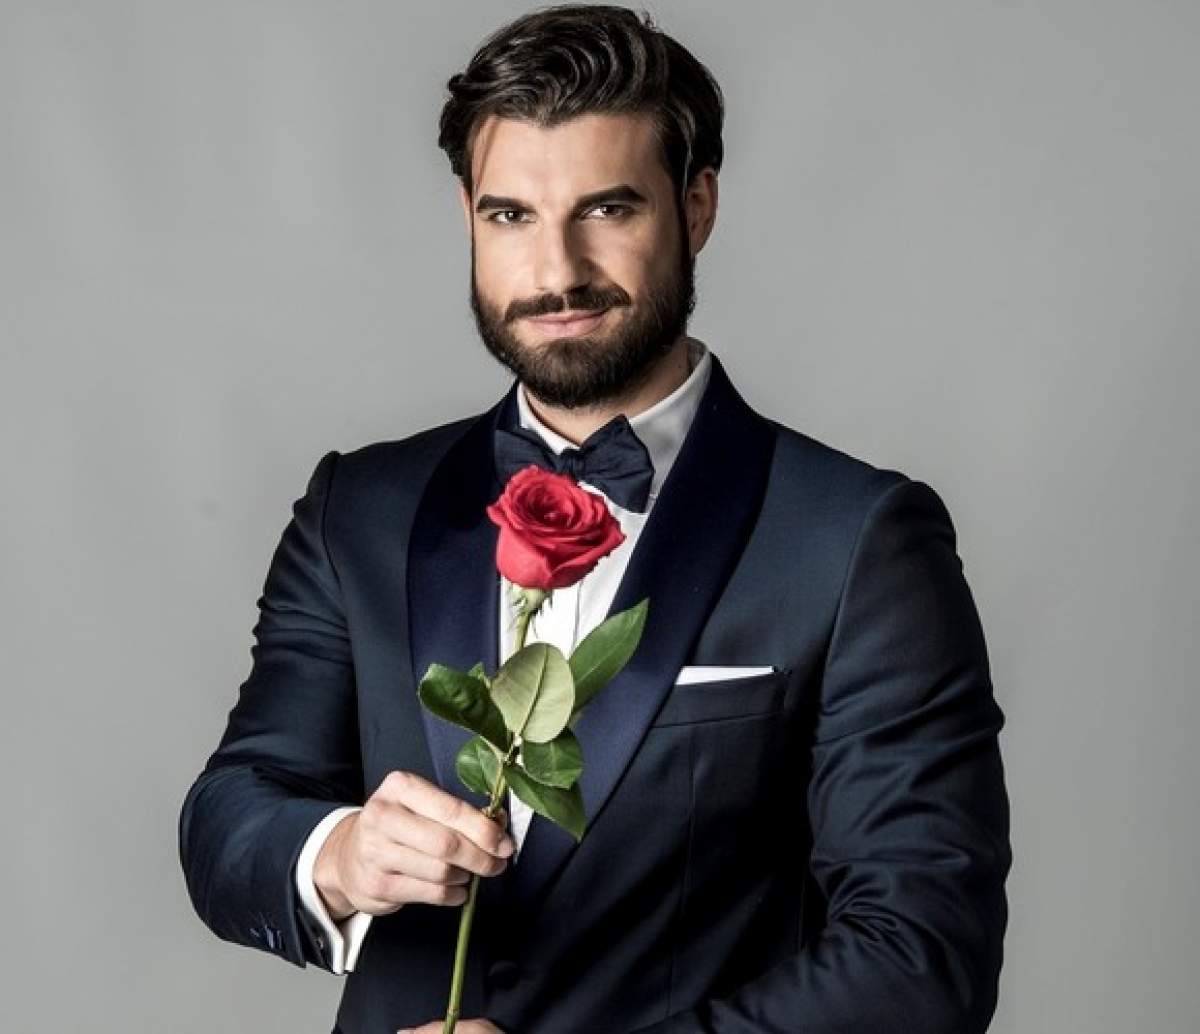 Cum alege, de fapt, Andi Constantin cui să-i ofere trandafirul în emisiunea Burlacul: “Mă las ghidat de...”